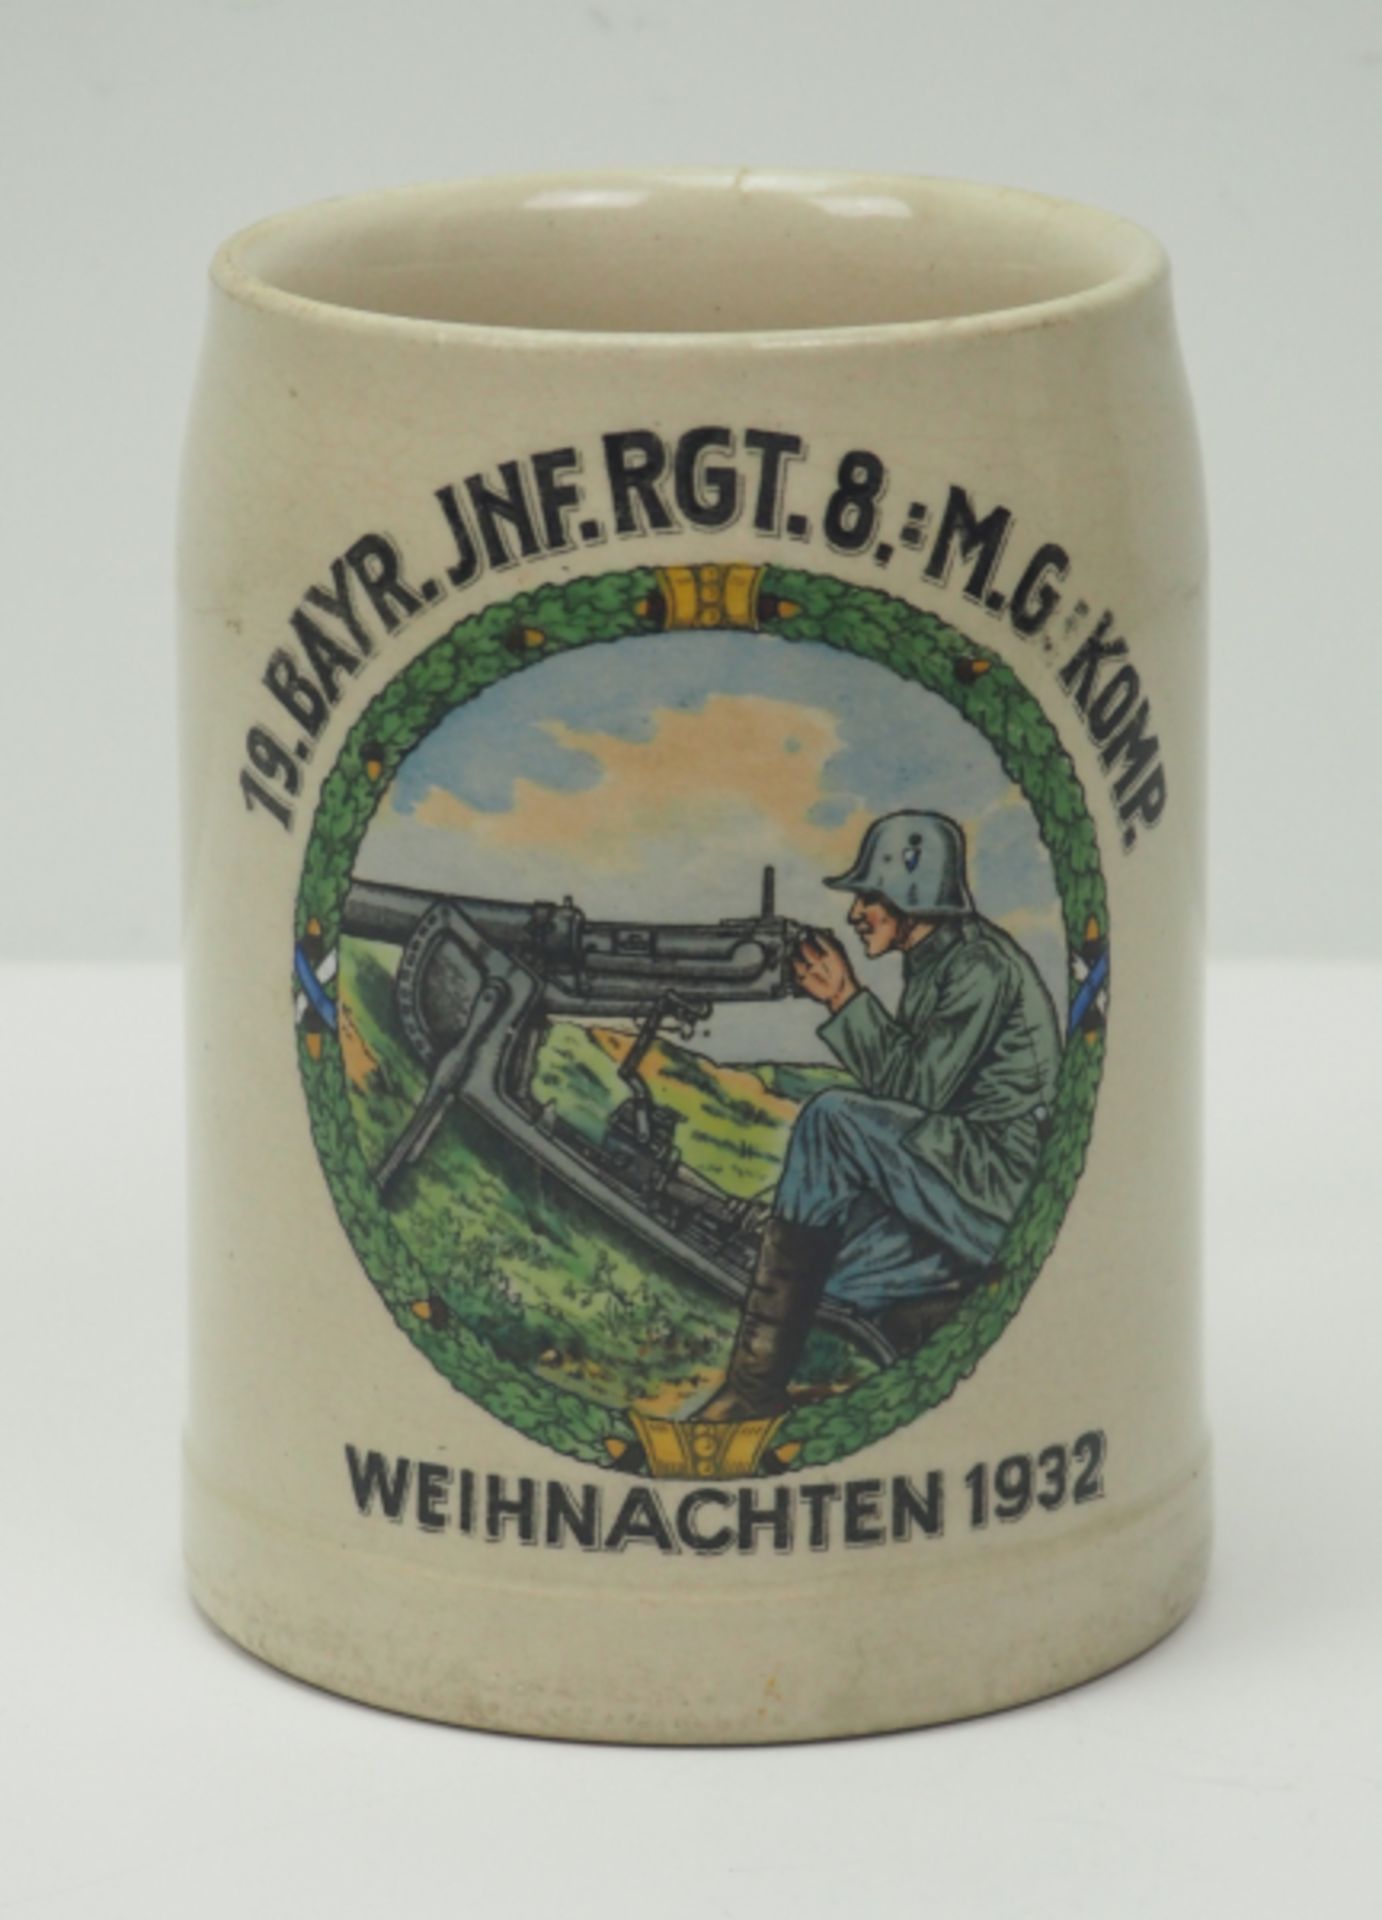 Reichswehr: Weihnachtskrug 1932 - 19. Bayr. Inf. Rgt. 8.-M.G.-Komp.Steingut, mit farbigem Motiv.